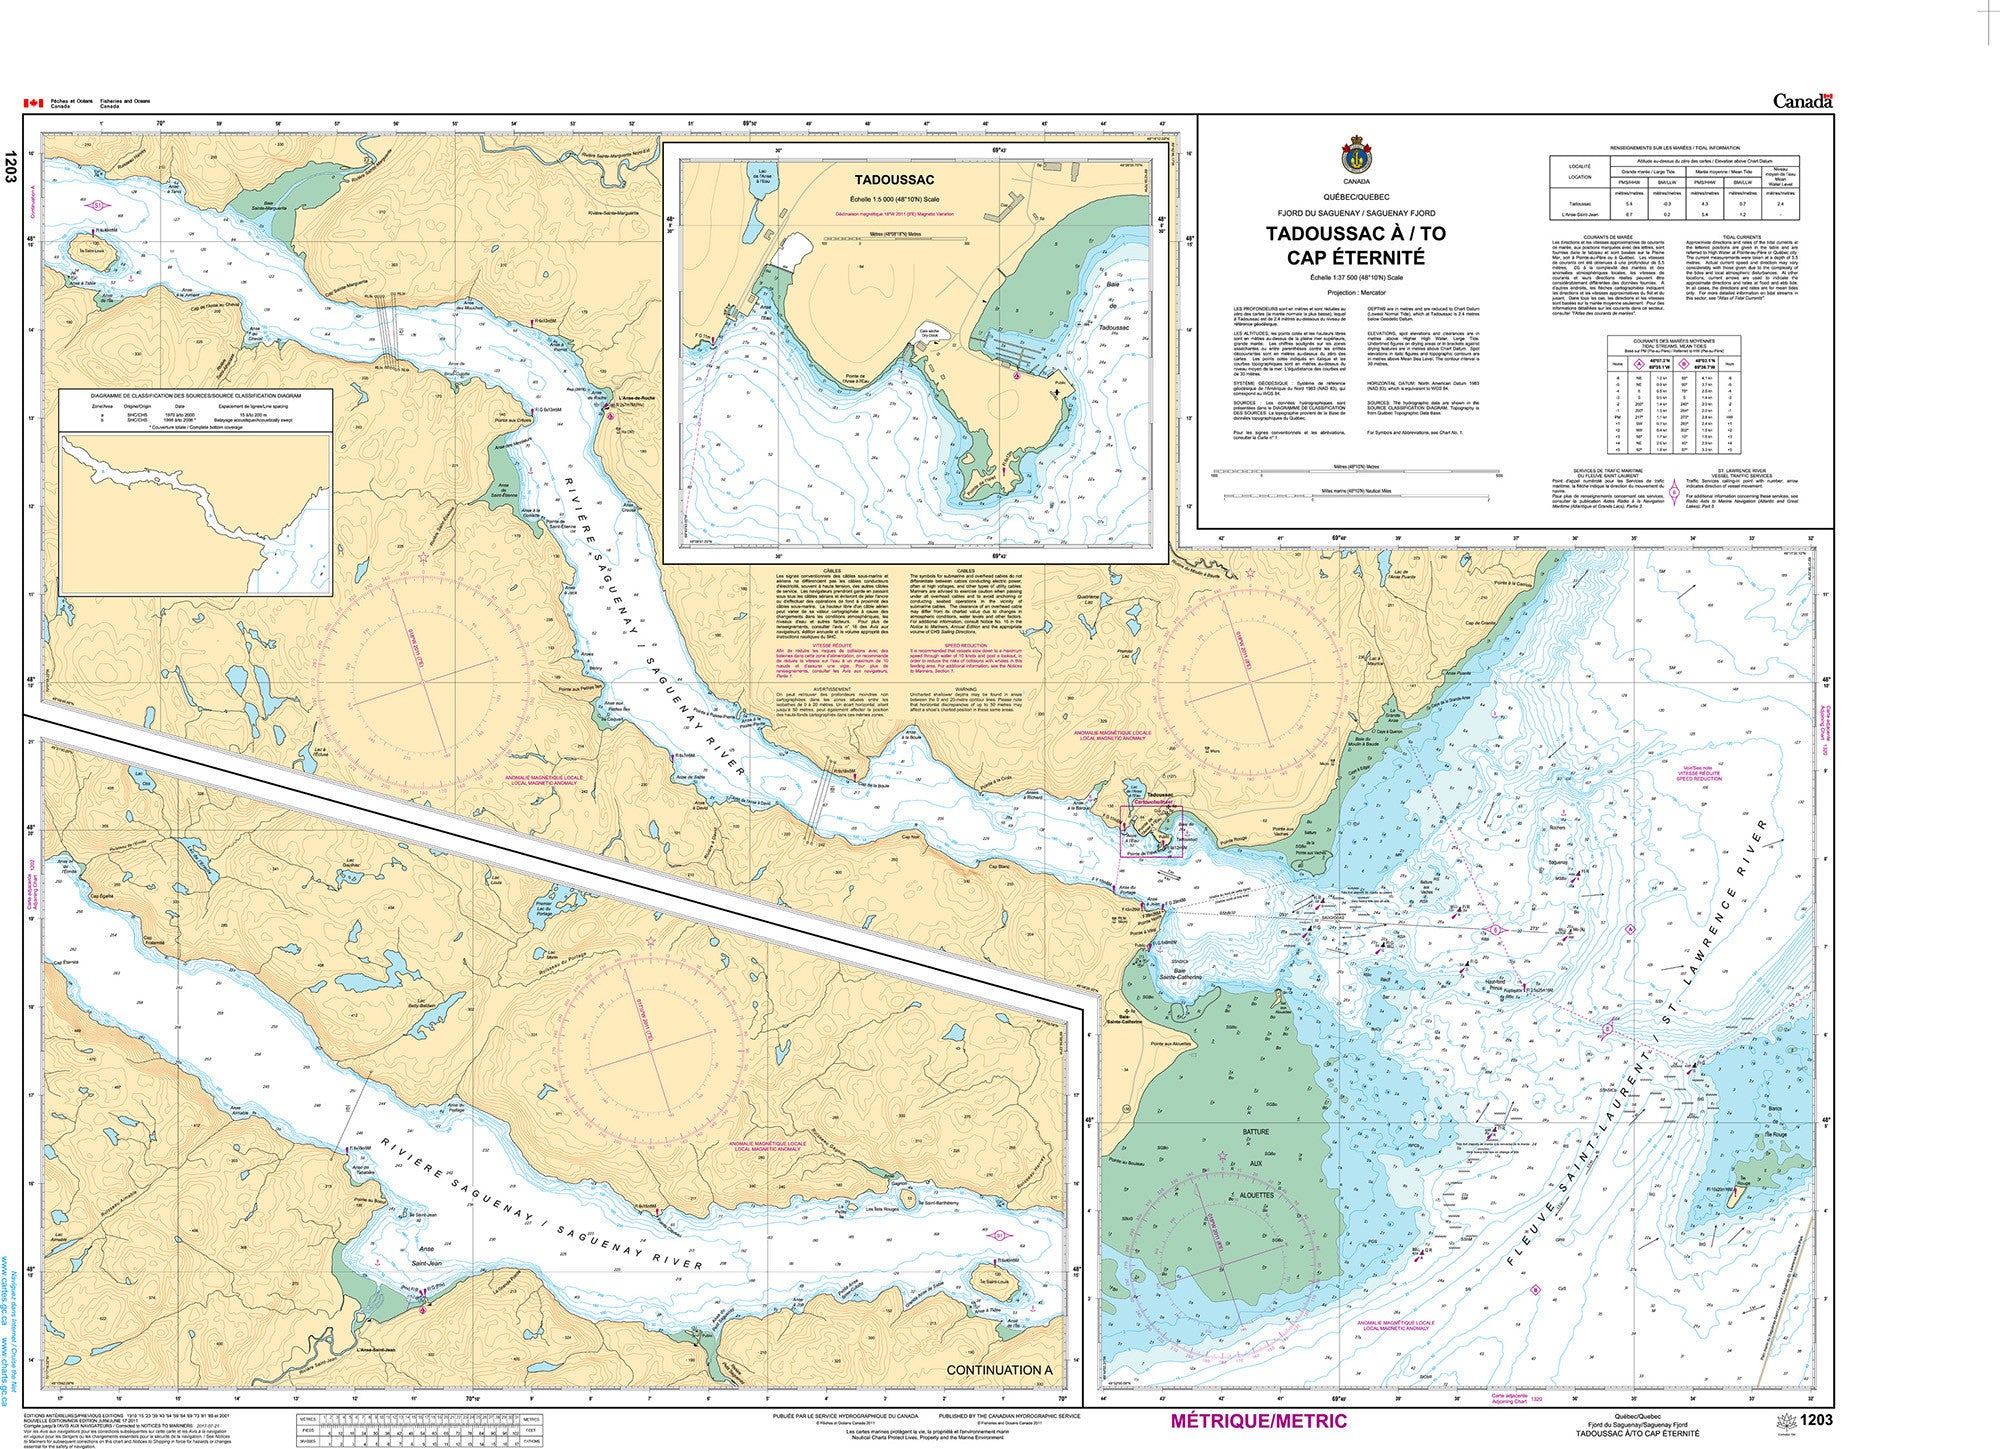 Canadian Hydrographic Service Nautical Chart CHS1203: Tadoussac à/to Cap Éternité